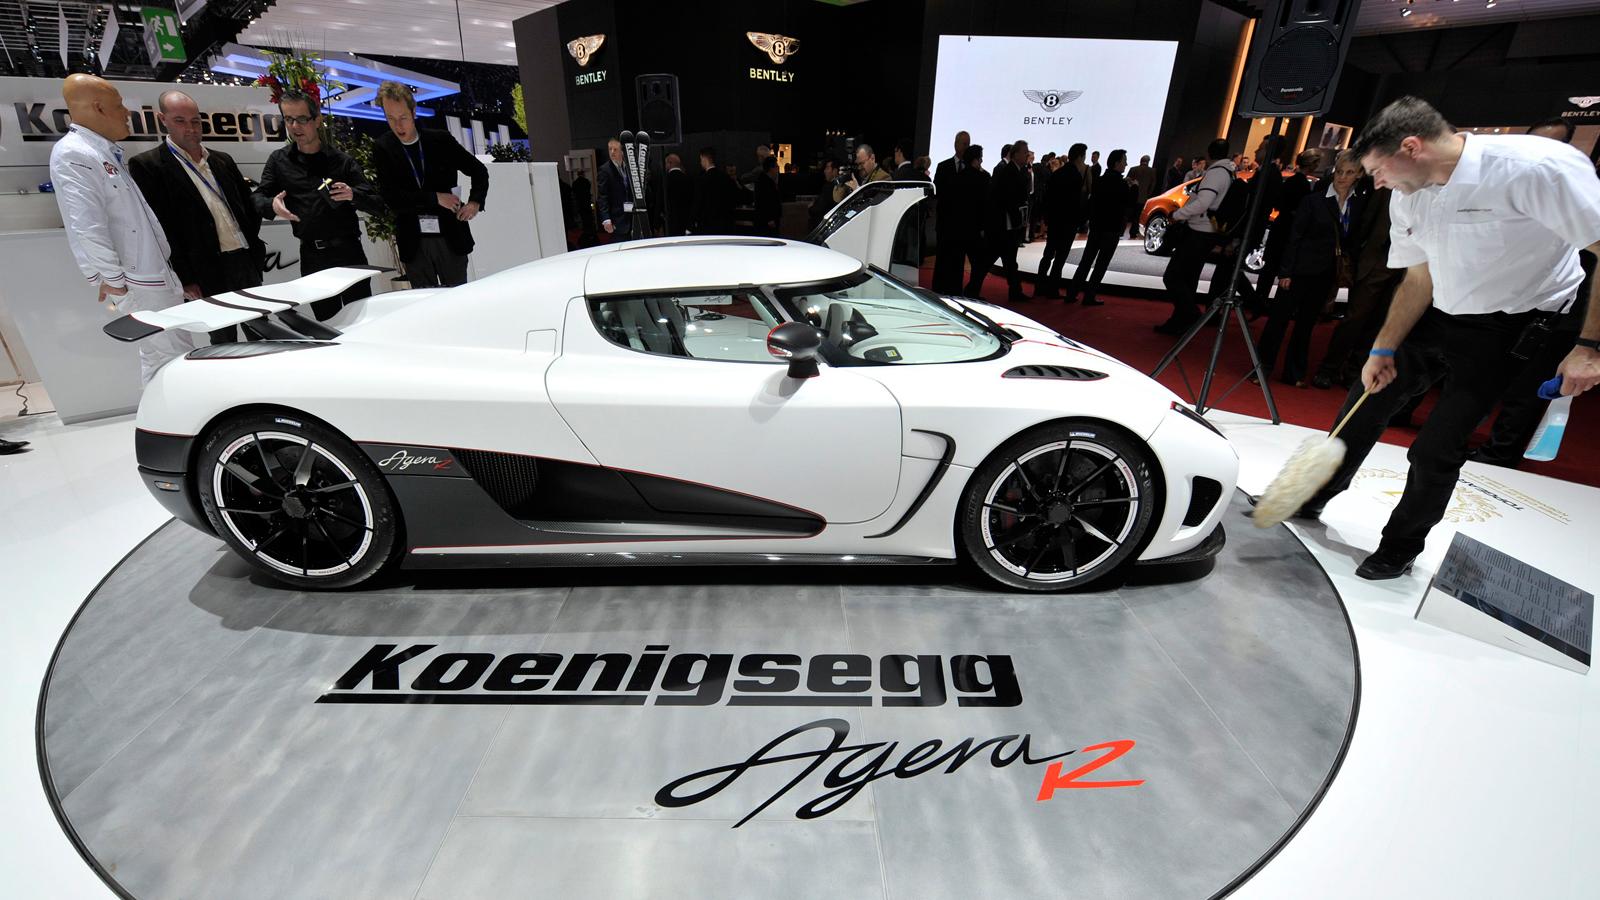 Koenigsegg Agera R  Brutalt snabb - och kan utrustas med takbox. Motor: V8. 1115 hk vid 6900 varv. Acceleration: 0-100 km/tim på 2.9 s. Pris: 1,7 miljoner dollar - ca. 11 630 000 kronor.